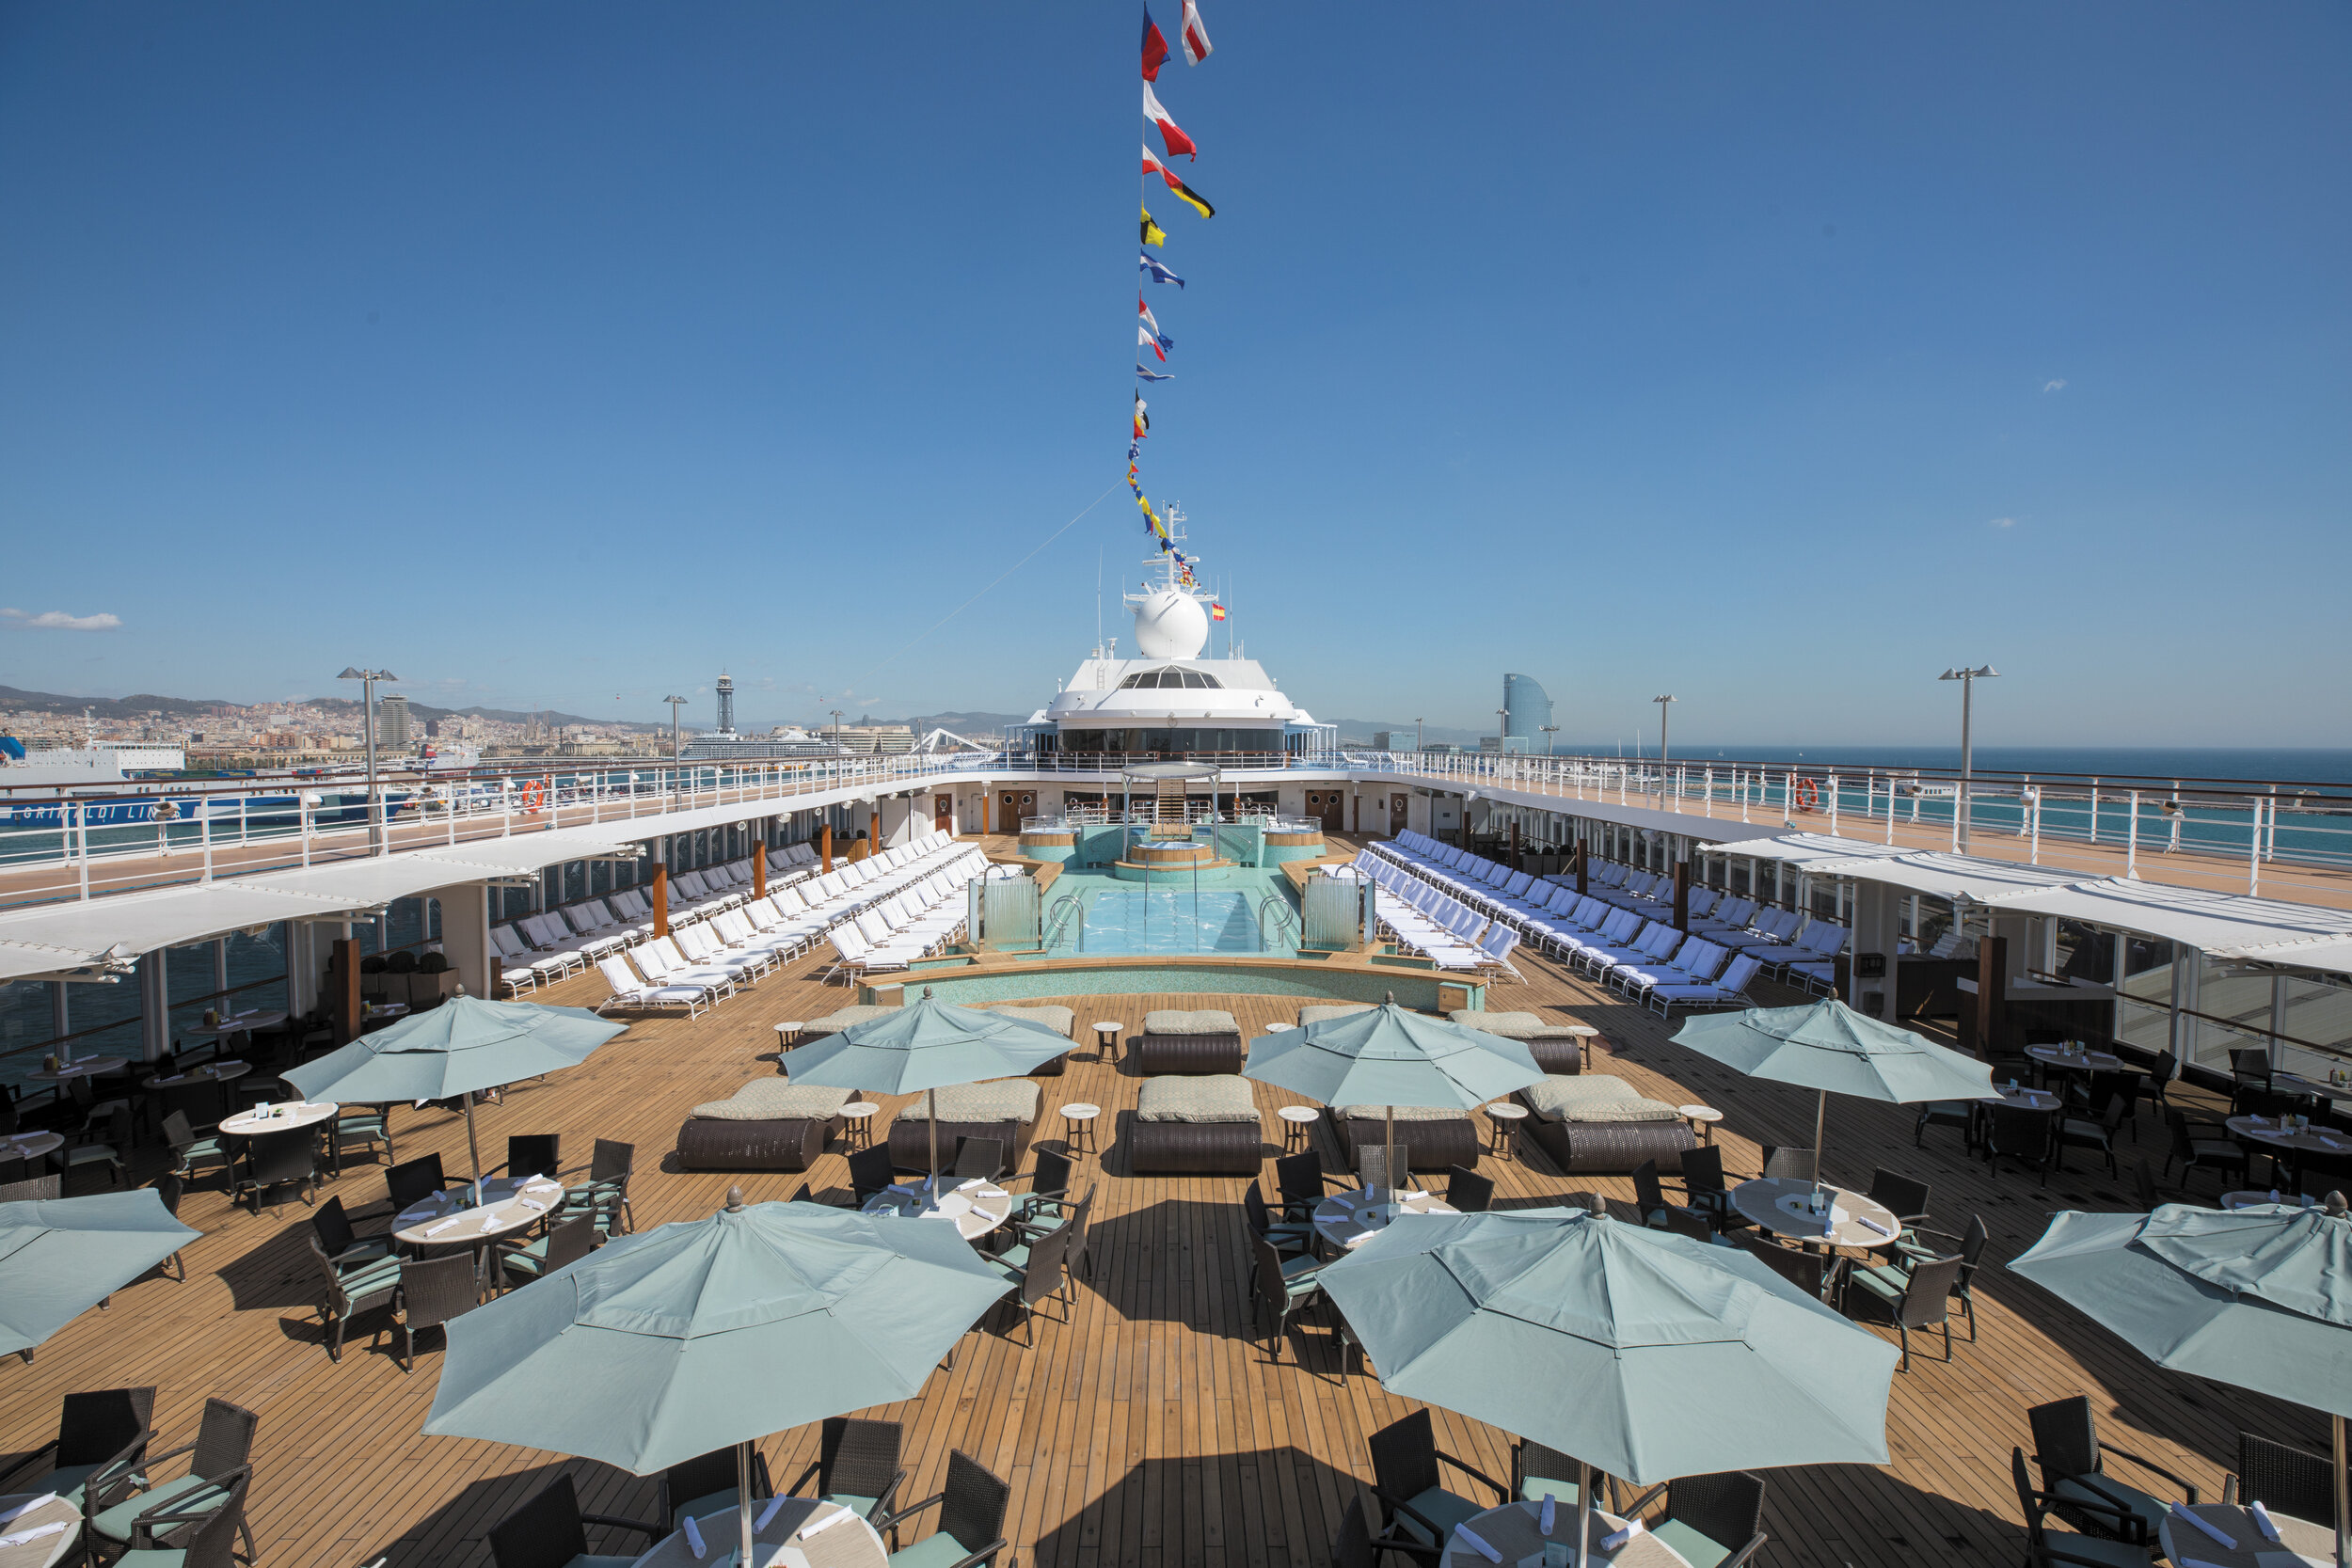   Regent Seven Seas Mariner pool deck (photo credit: Regent Seven Seas Cruises)  